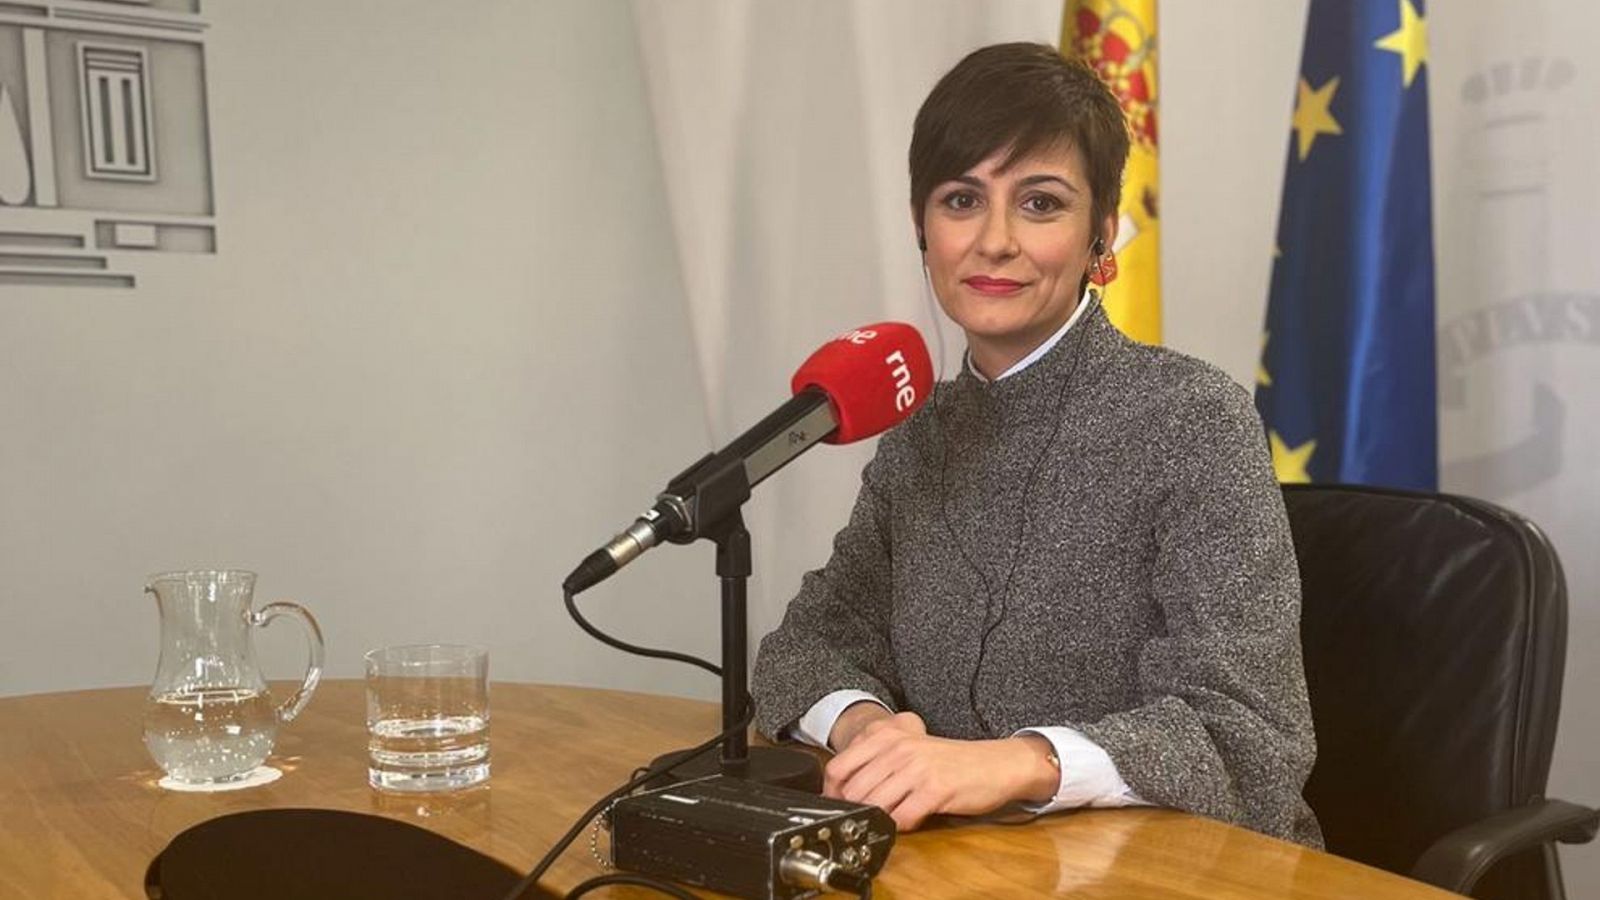 Las Mañanas de RNE - Isabel Rodríguez, portavoz del Gobierno: "El Partido Popular está cada vez más cerca de Vox" - Escuchar ahora